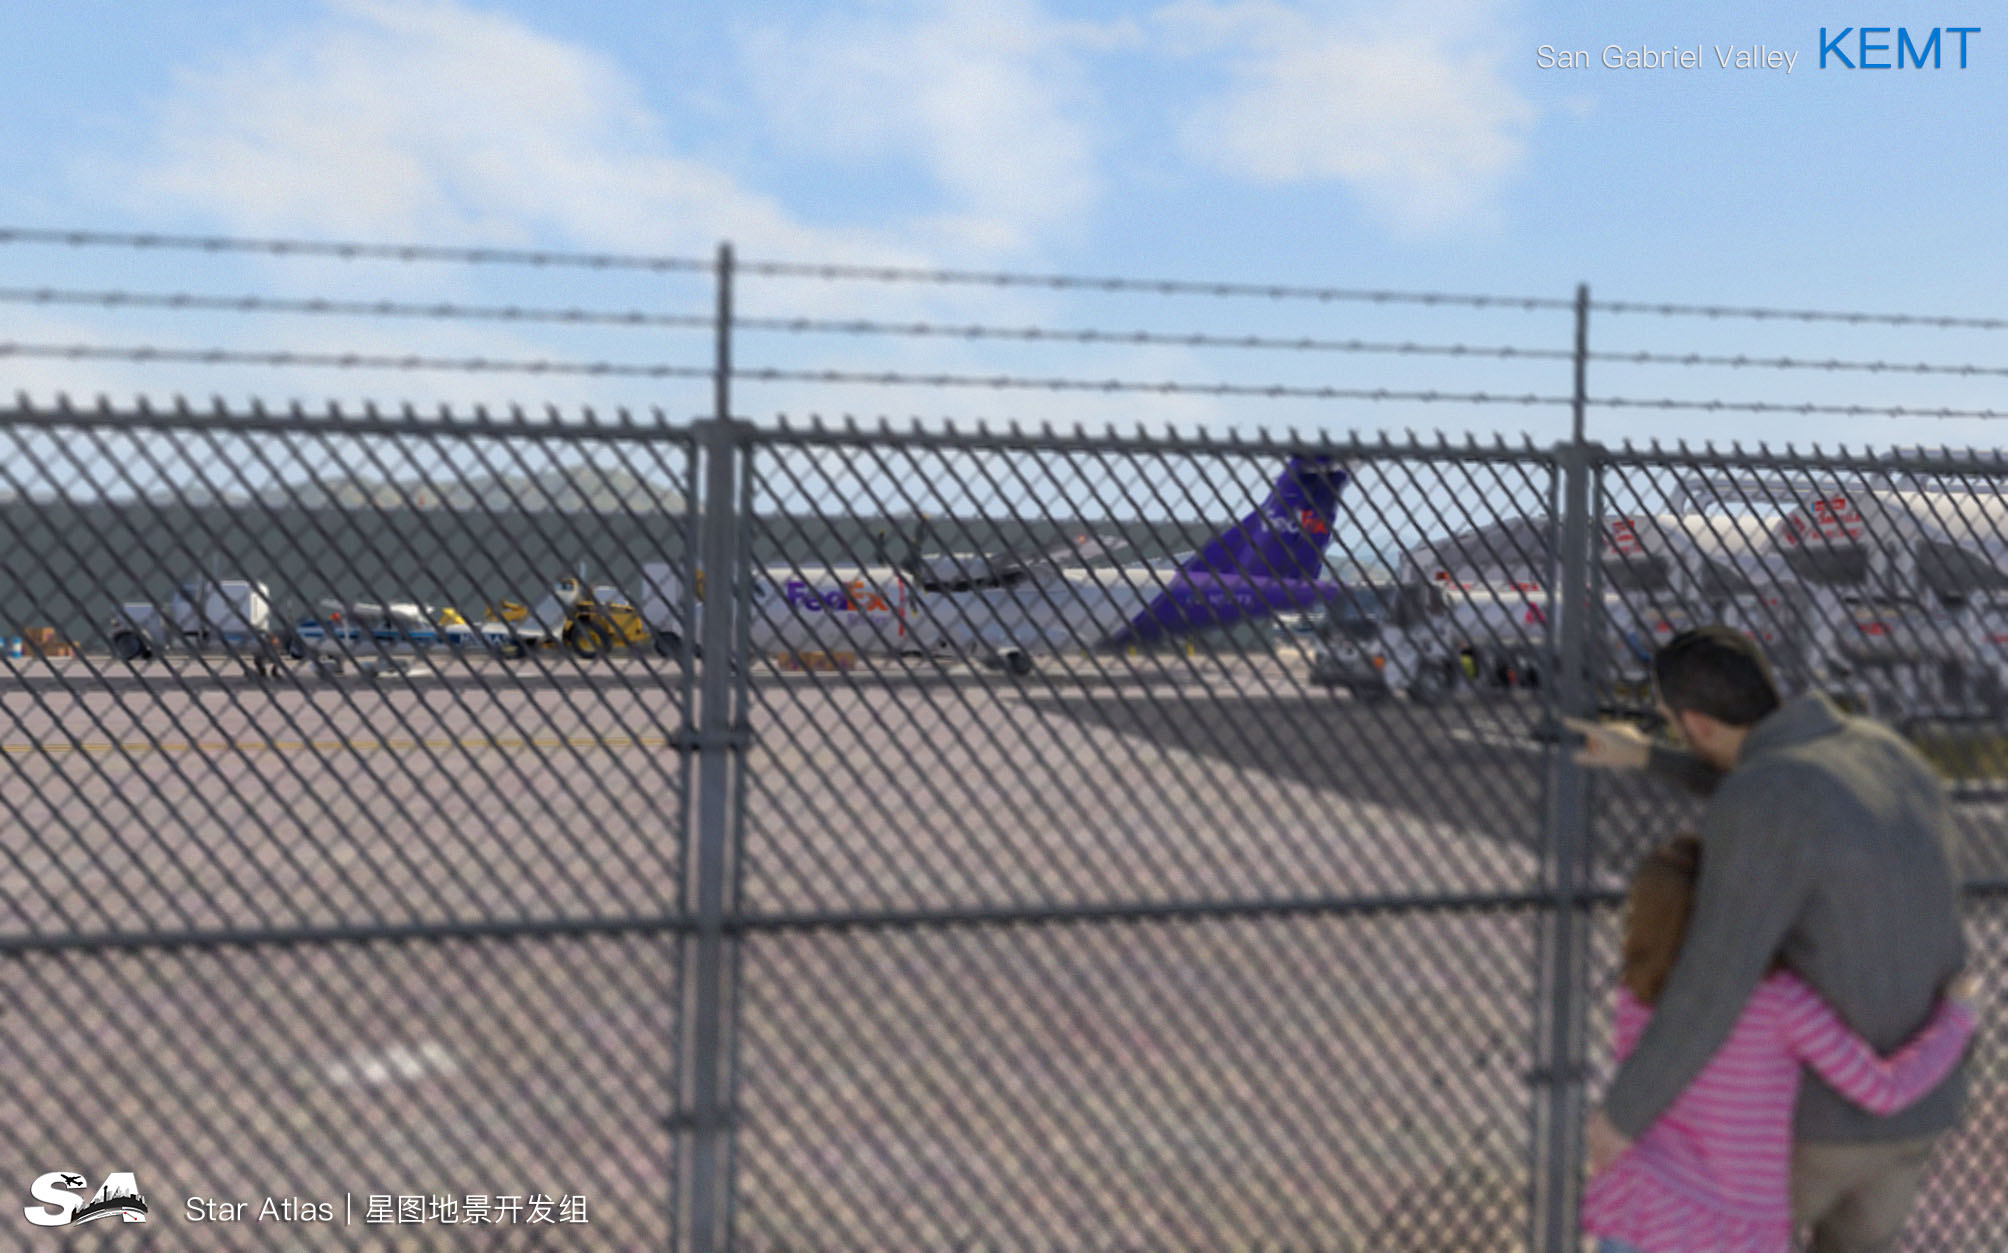 【X-Plane】KEMT-圣盖博谷机场 HD 1.0-2092 